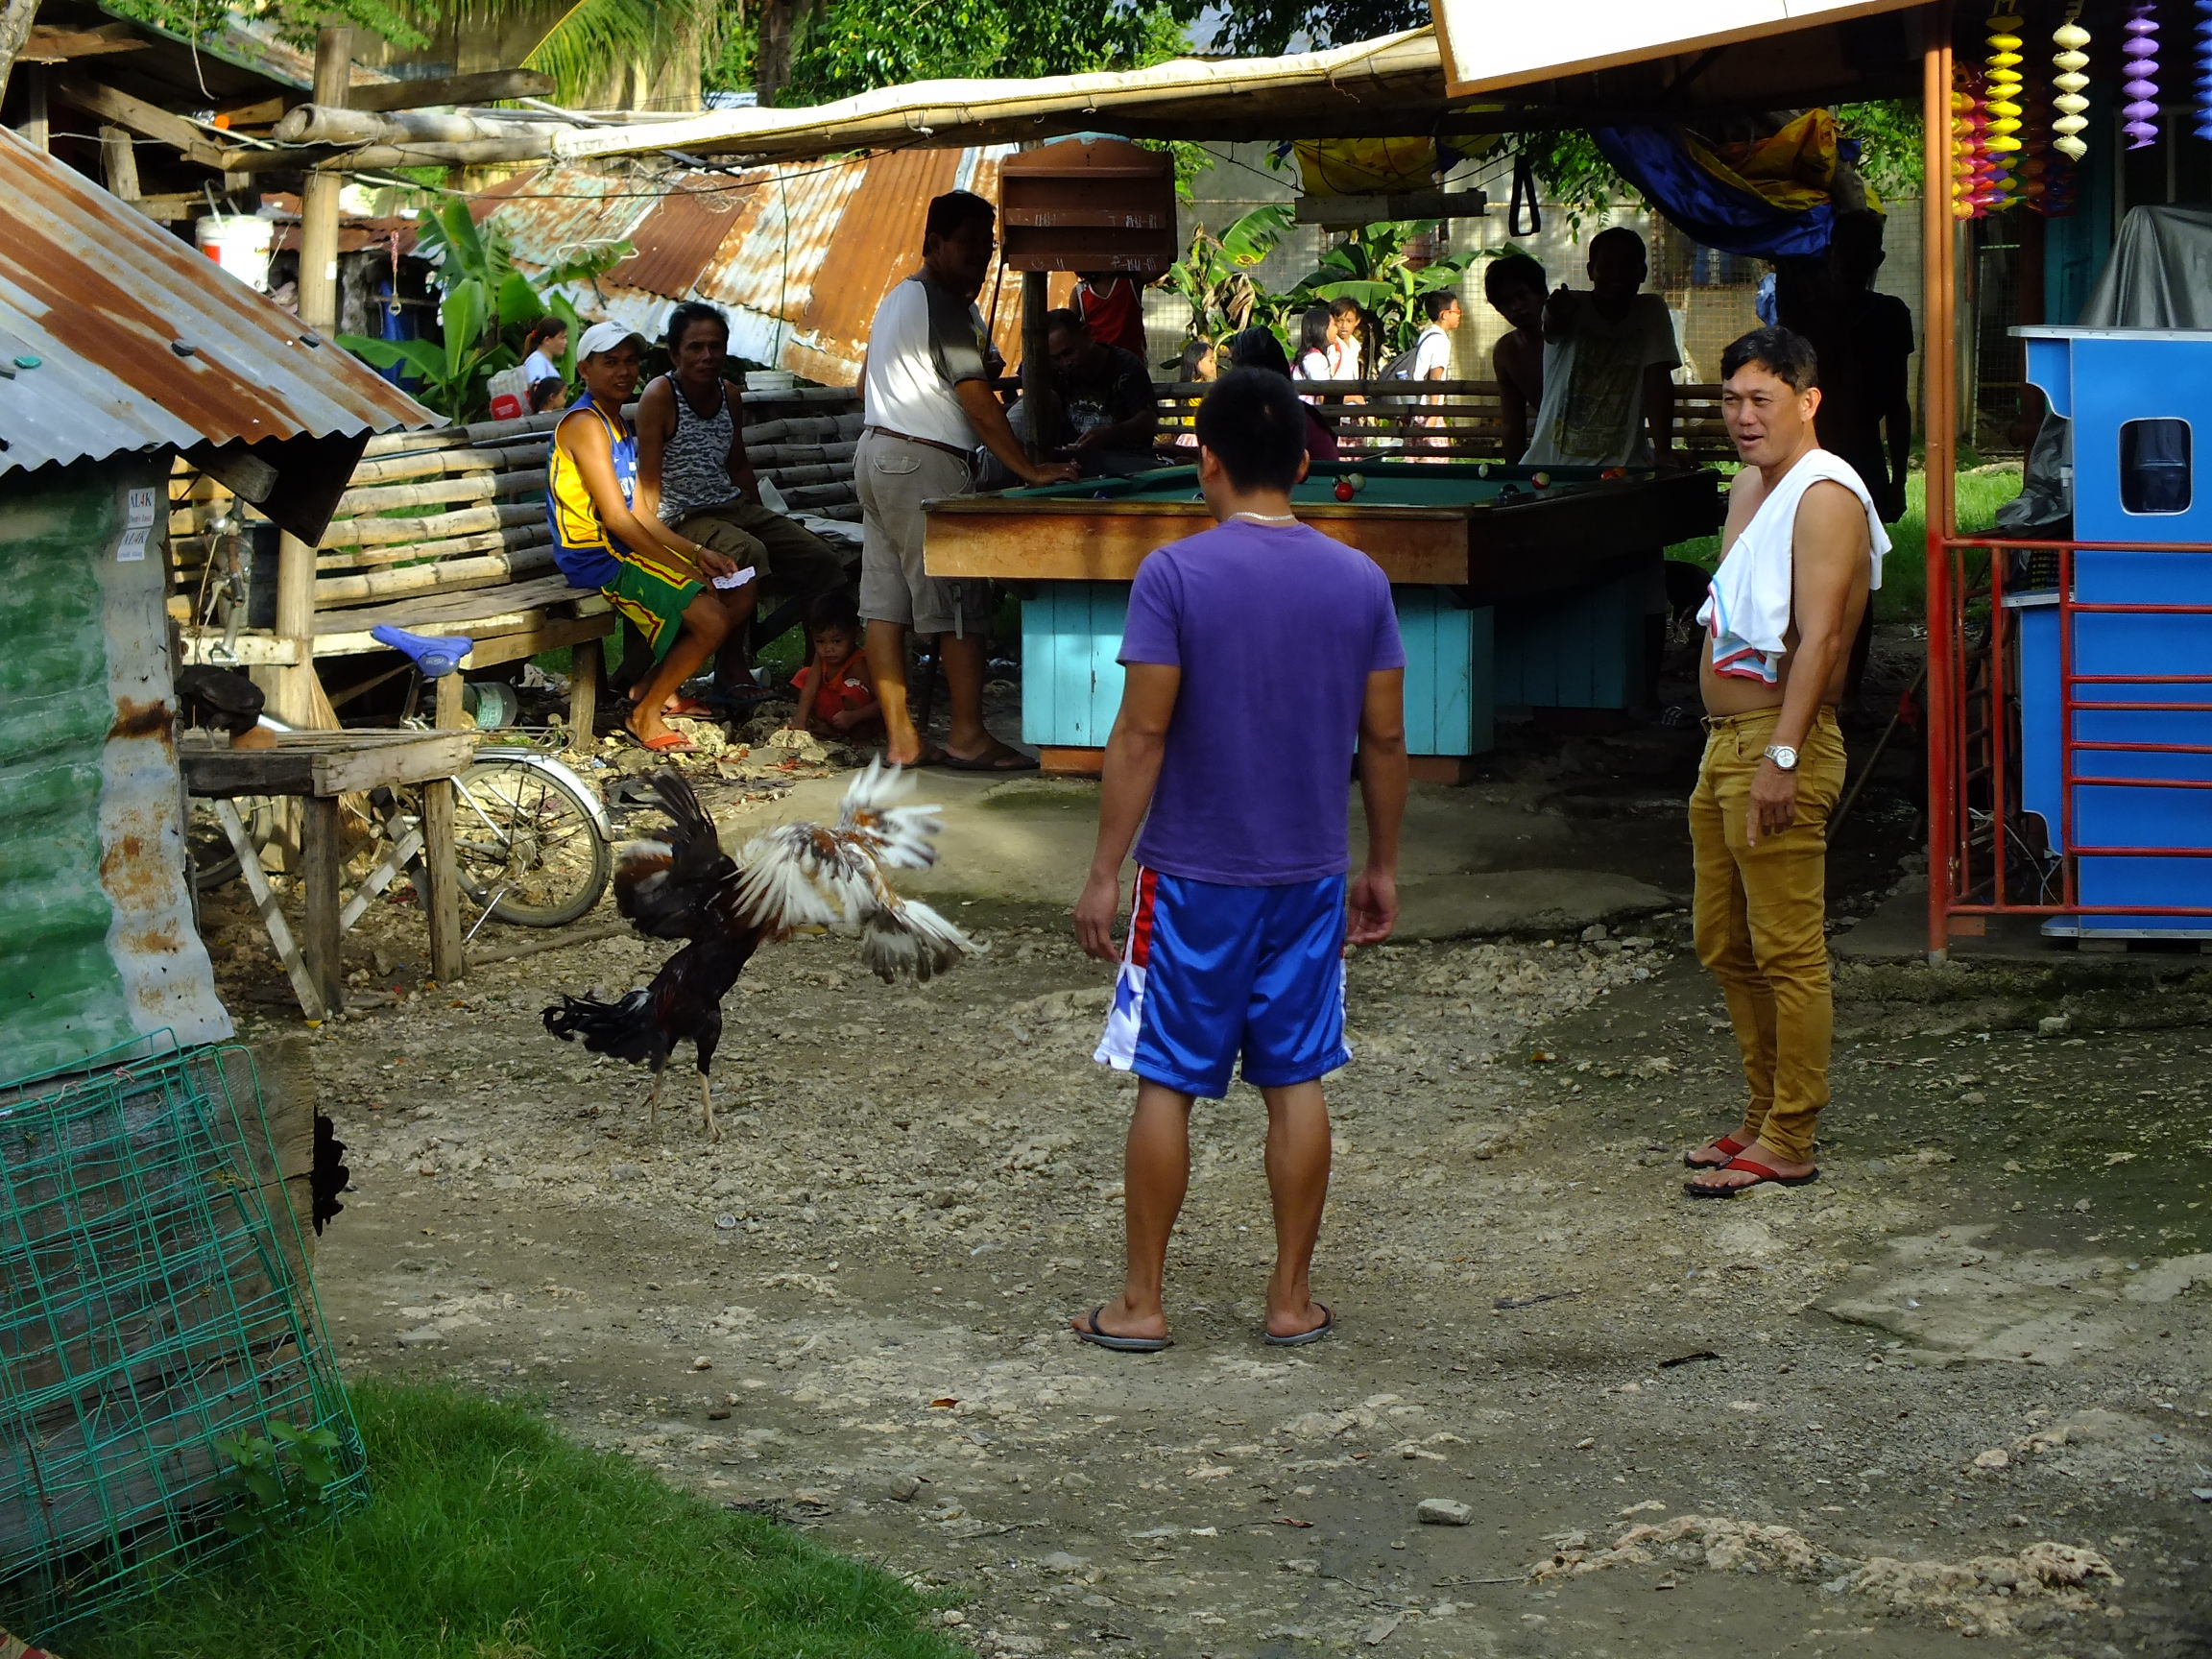  Buy Whores in Lapu-Lapu City,Philippines